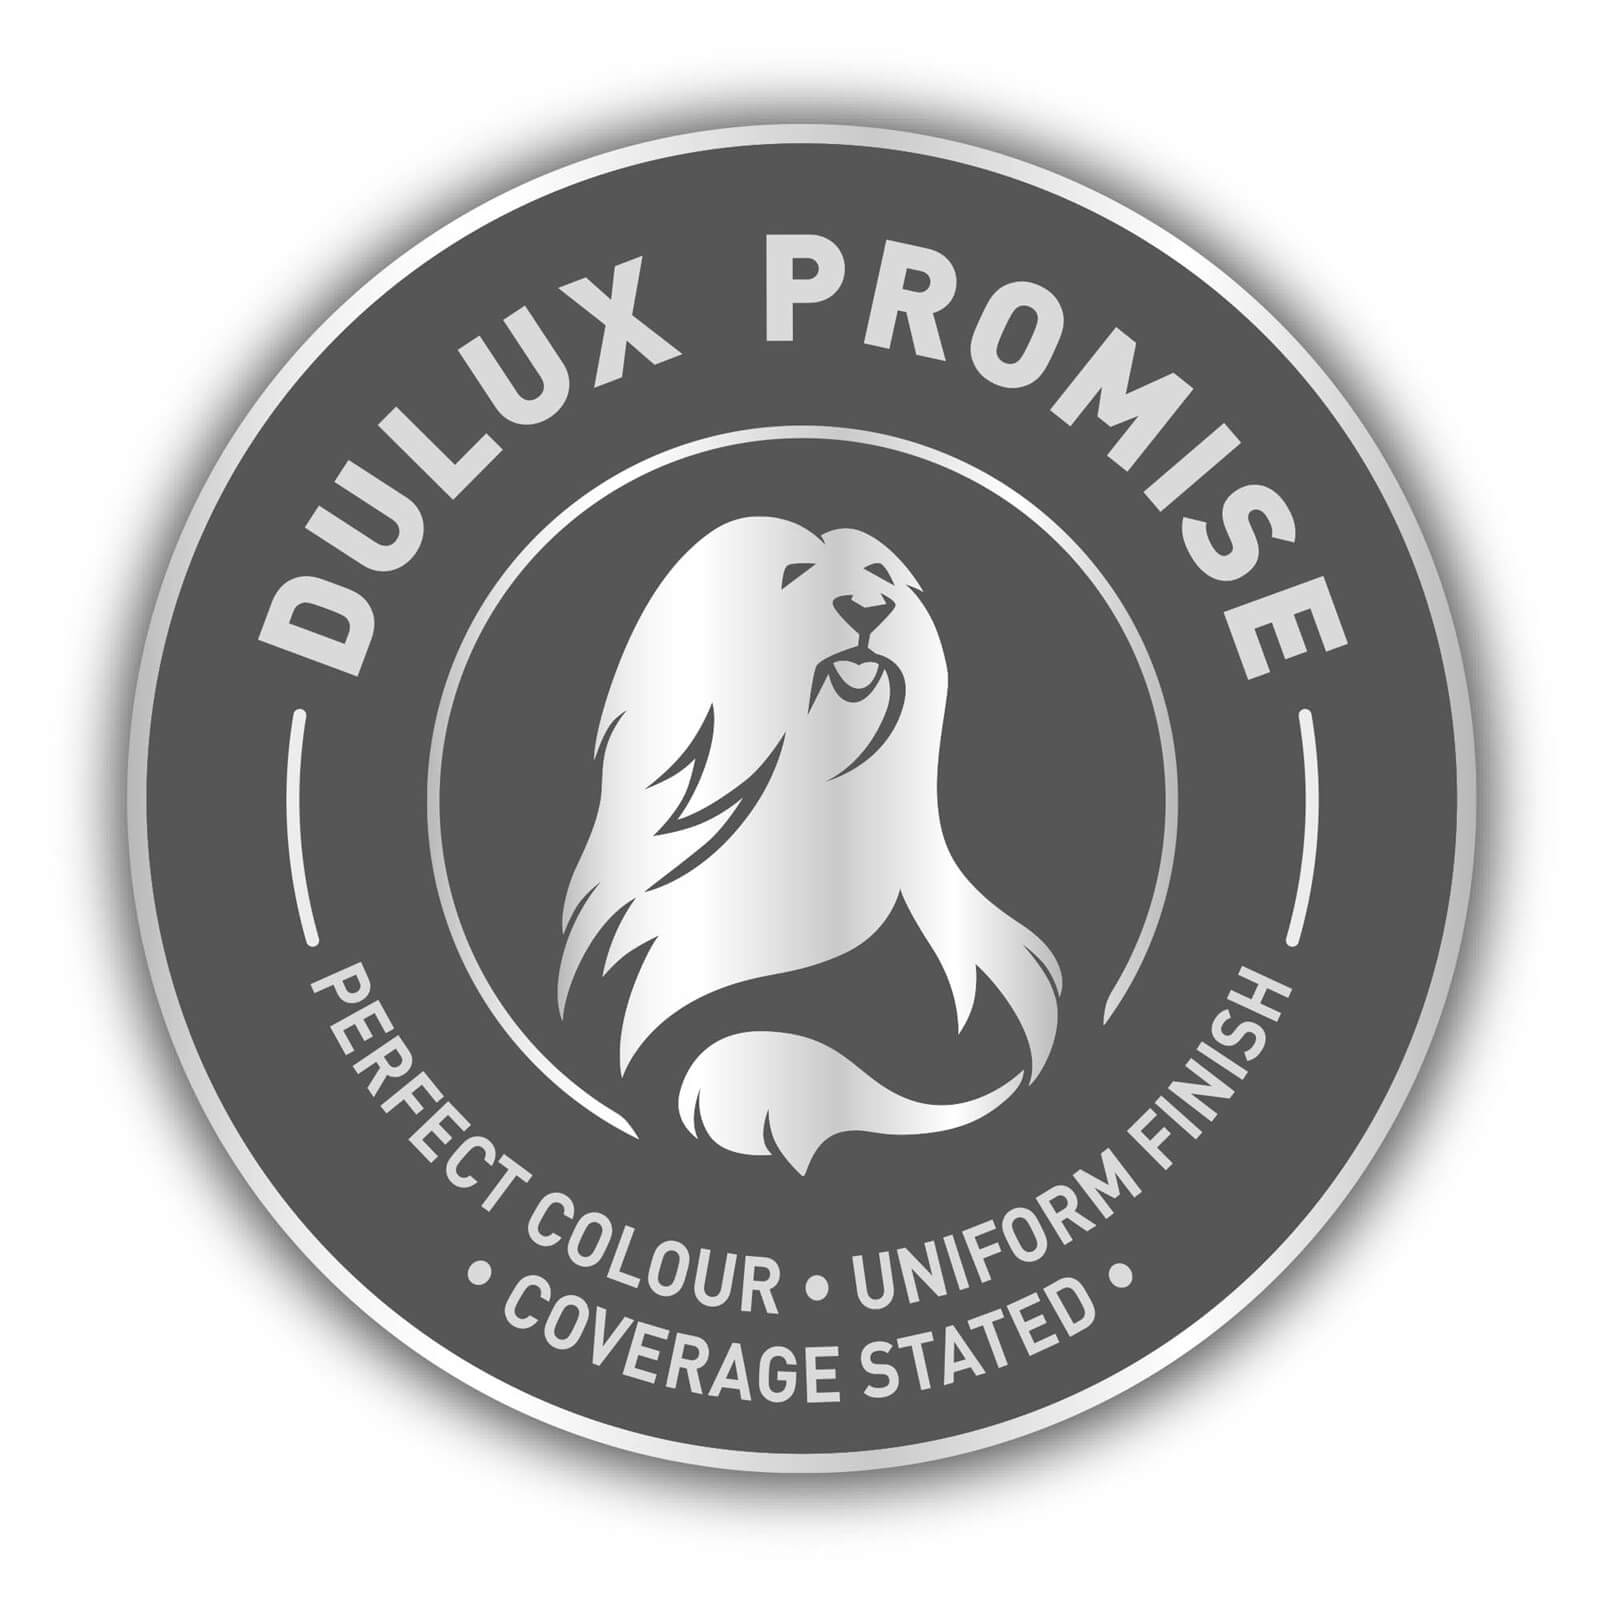 Dulux Matt Emulsion Paint Gentle Fawn - 5L